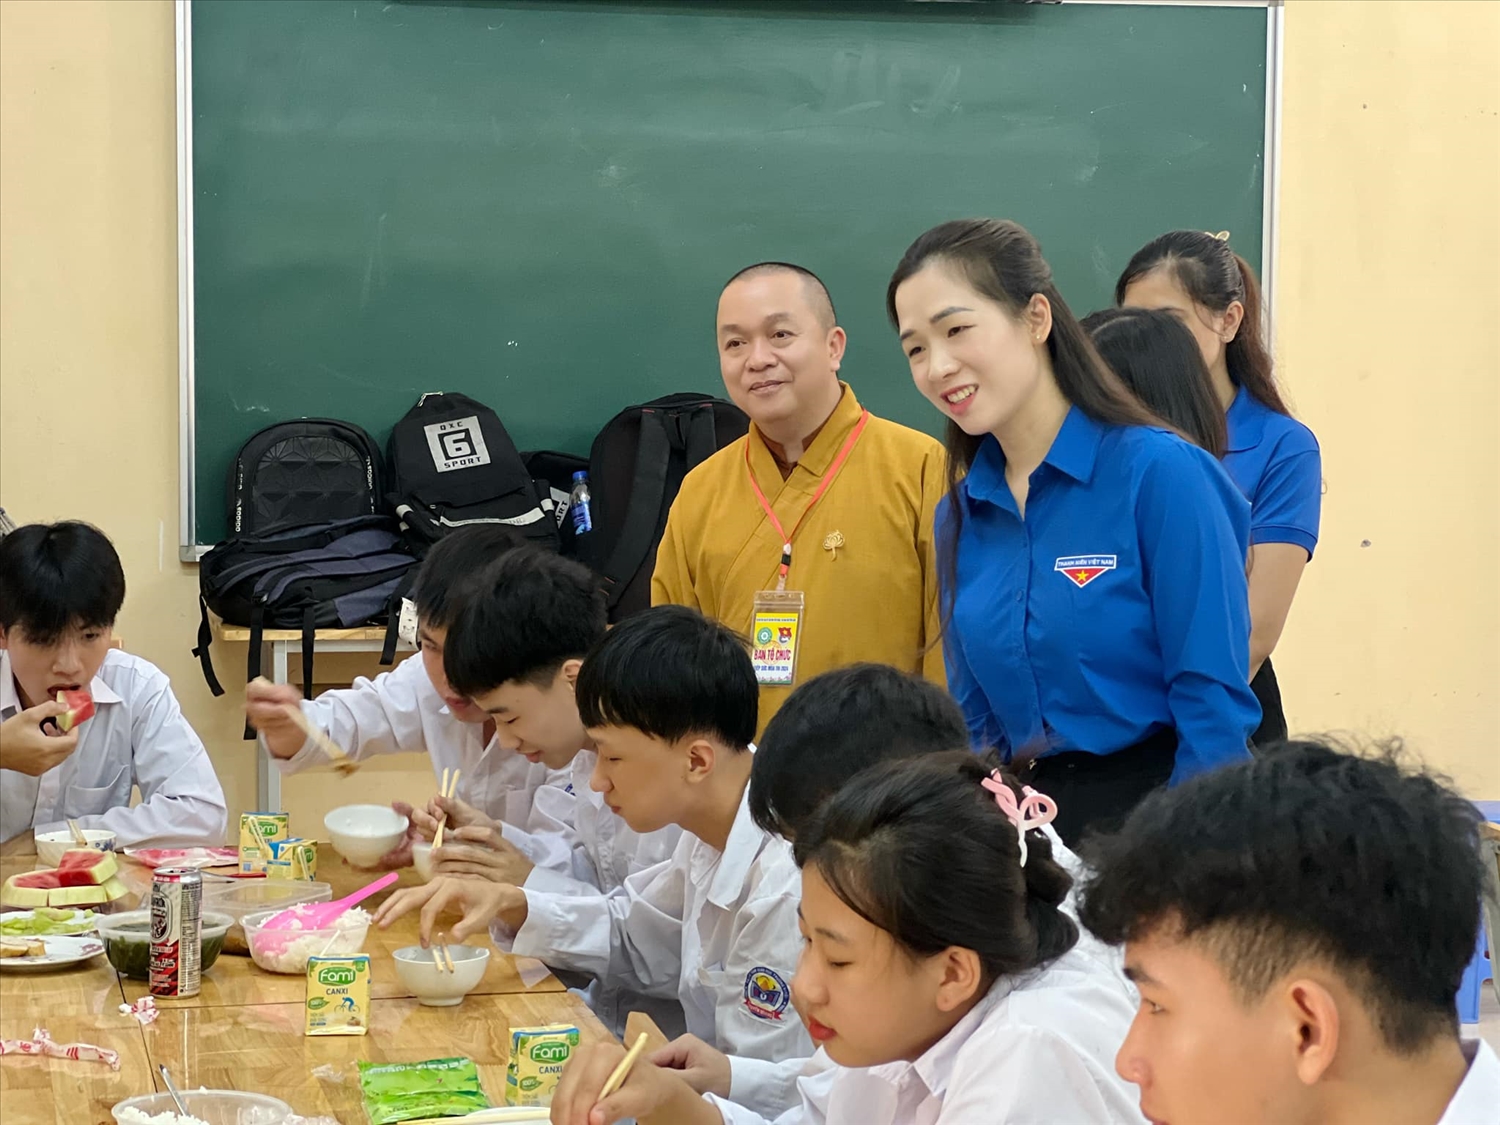 Tỉnh đoàn Tuyên Quang đã phối hợp với Ban Trị sự Giáo hội Phật giáo tỉnh chuẩn bị các “Suất cơm tình nguyện - Tiếp sức mùa thi” cho các thí sinh và tình nguyện viên (Ảnh: Tỉnh đoàn Tuyên Quang)